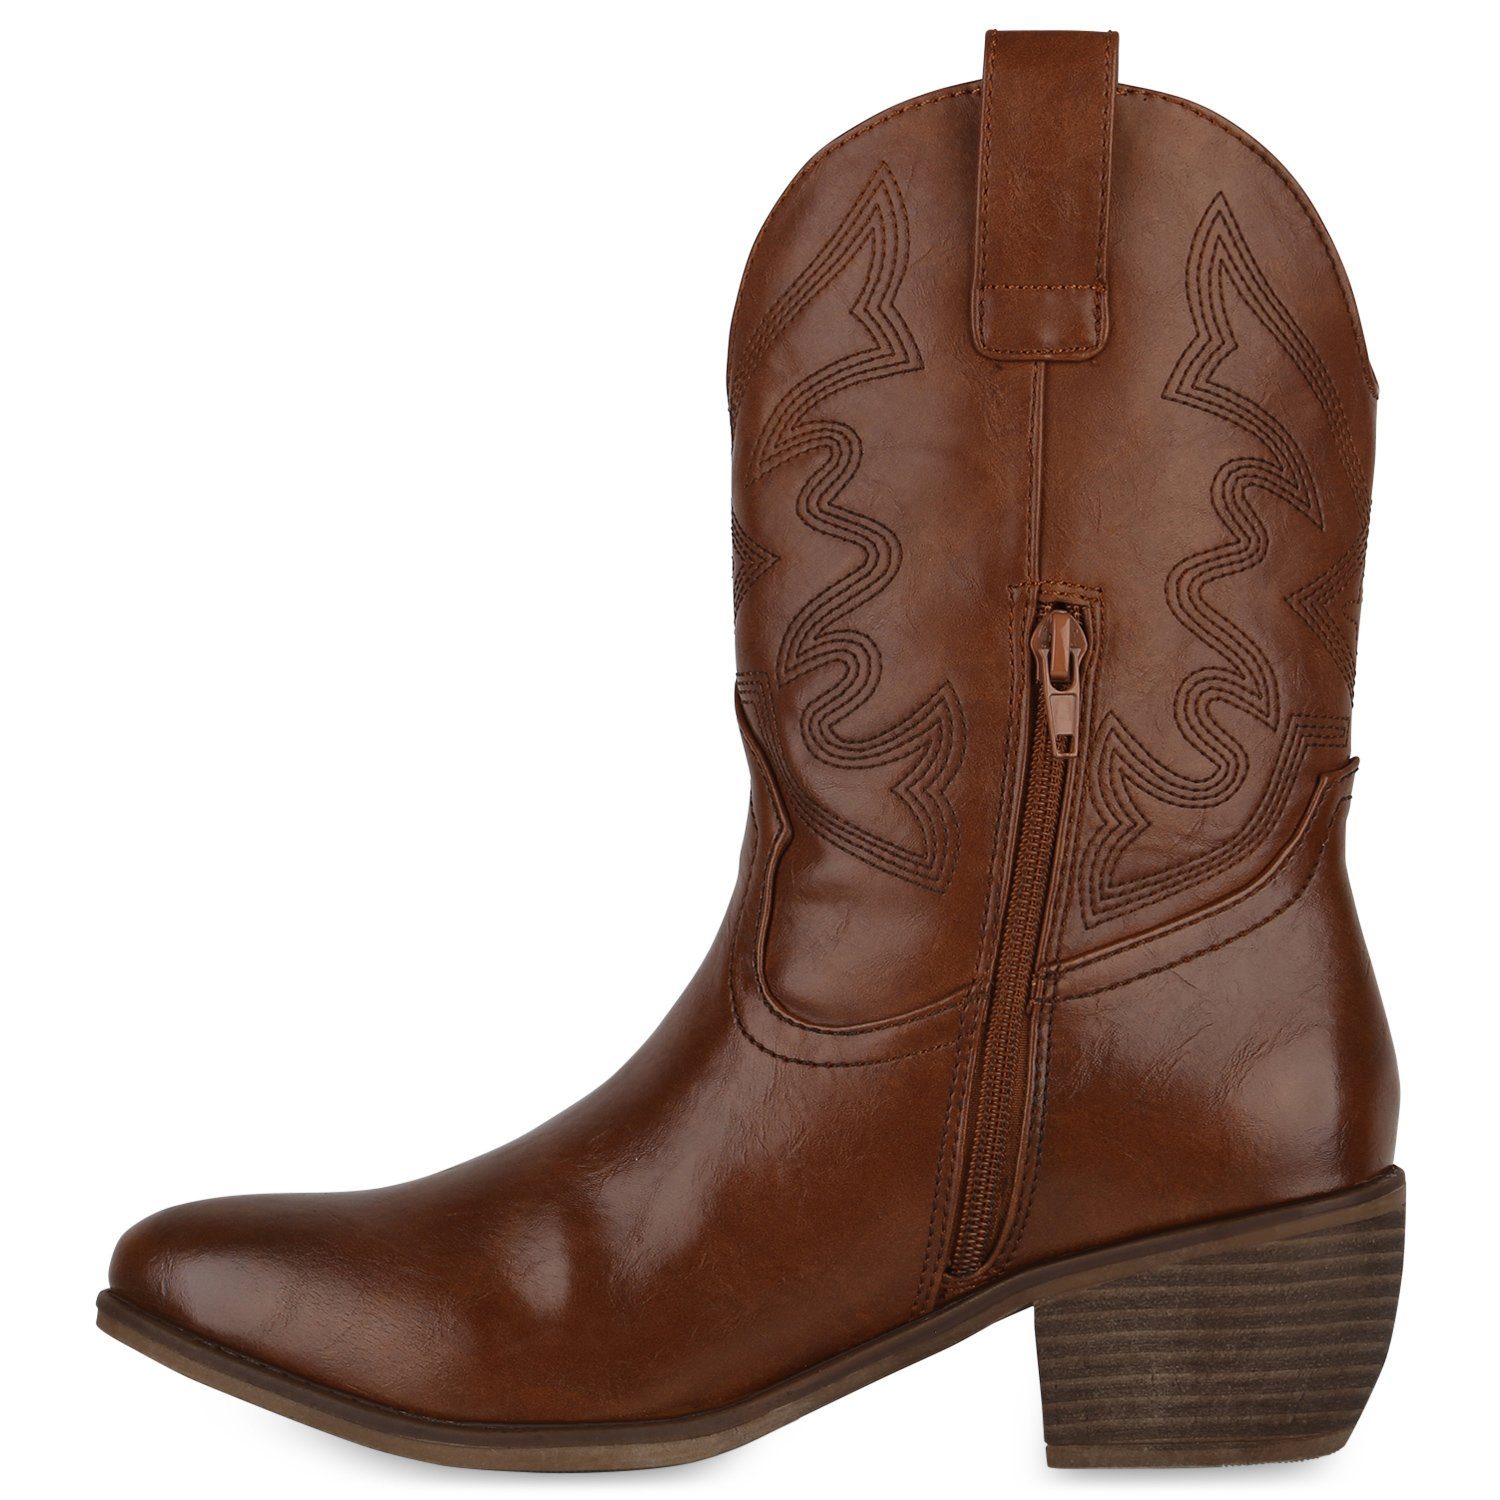 VAN HILL Boots Cowboy 840534 Hellbraun Schuhe